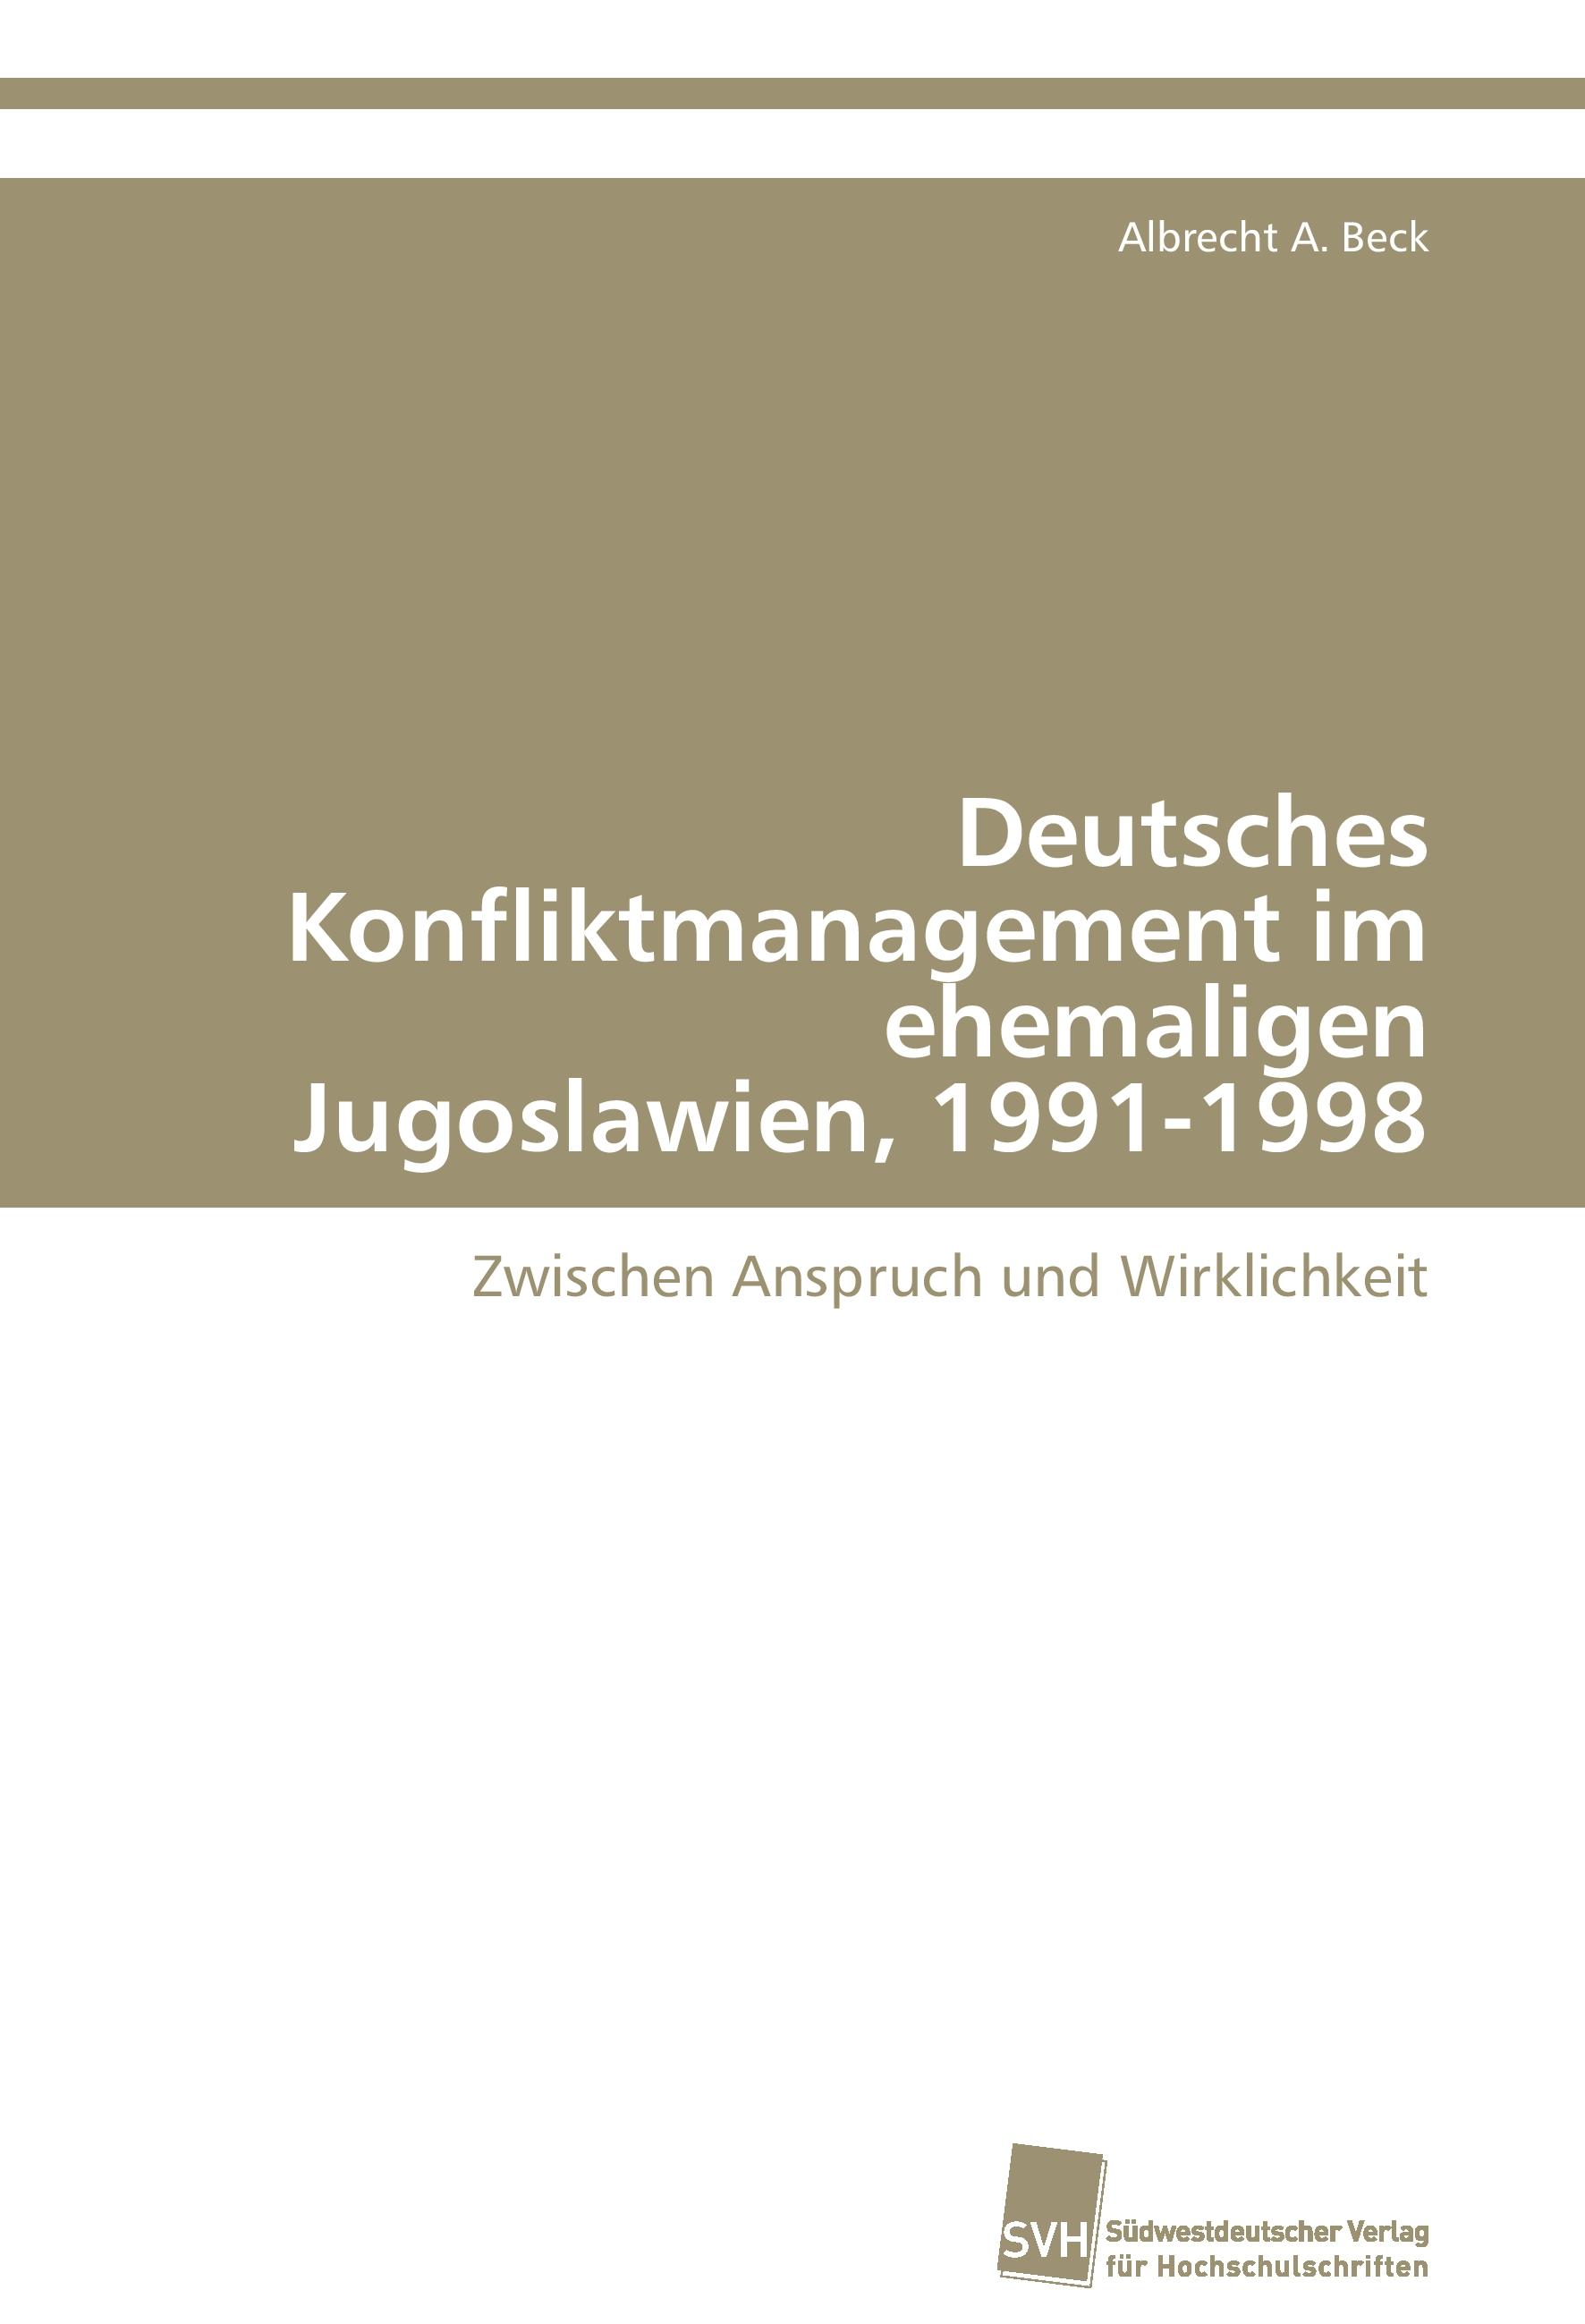 Deutsches Konfliktmanagement im ehemaligen Jugoslawien, 1991-1998 / Zwischen Anspruch und Wirklichkeit / Albrecht A. Beck / Taschenbuch / Paperback / 596 S. / Deutsch / 2015 / EAN 9783838101378 - Beck, Albrecht A.